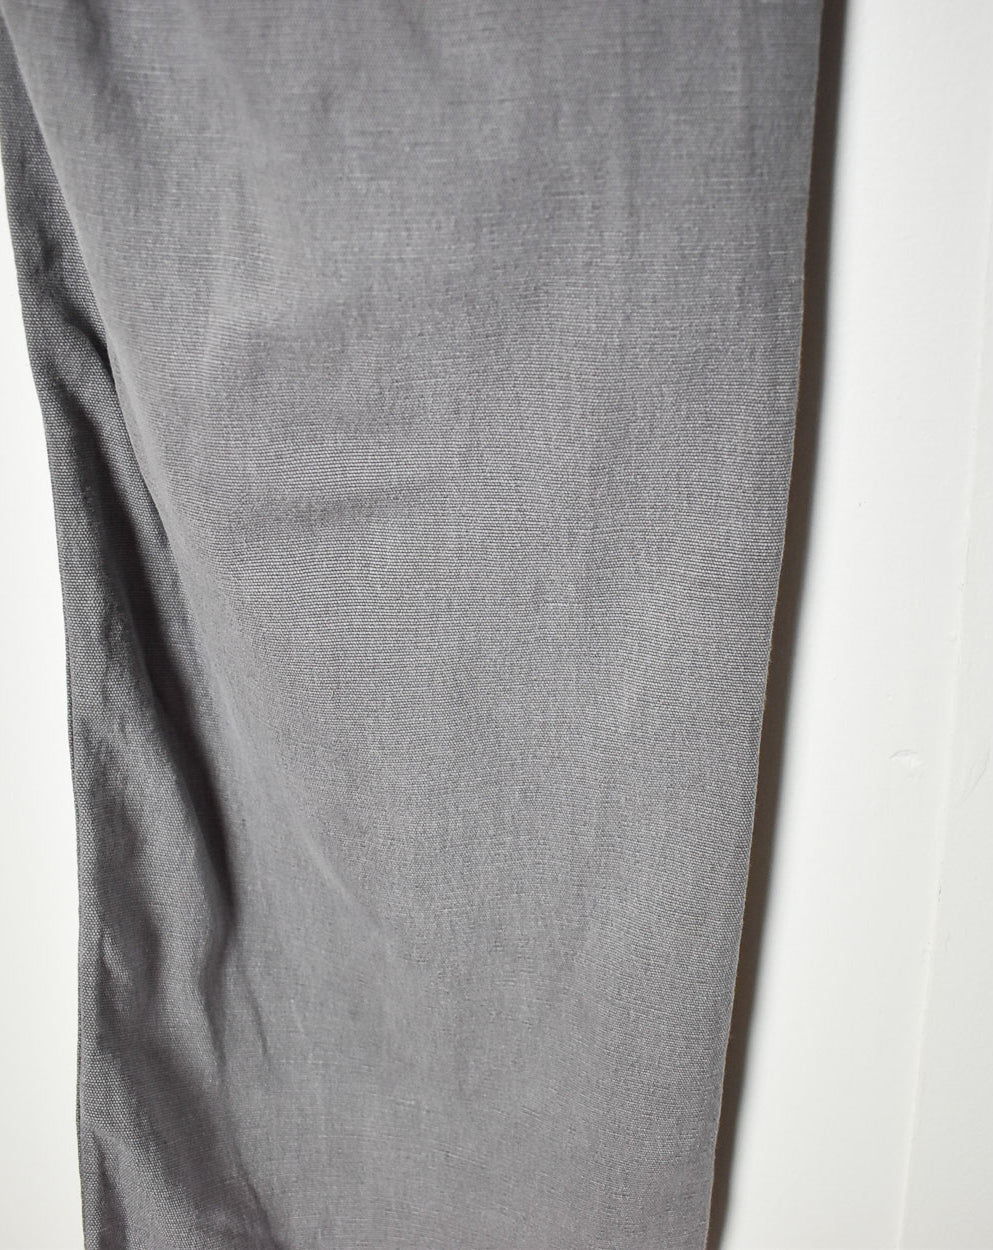 Grey Carhartt Jeans - W34 L30